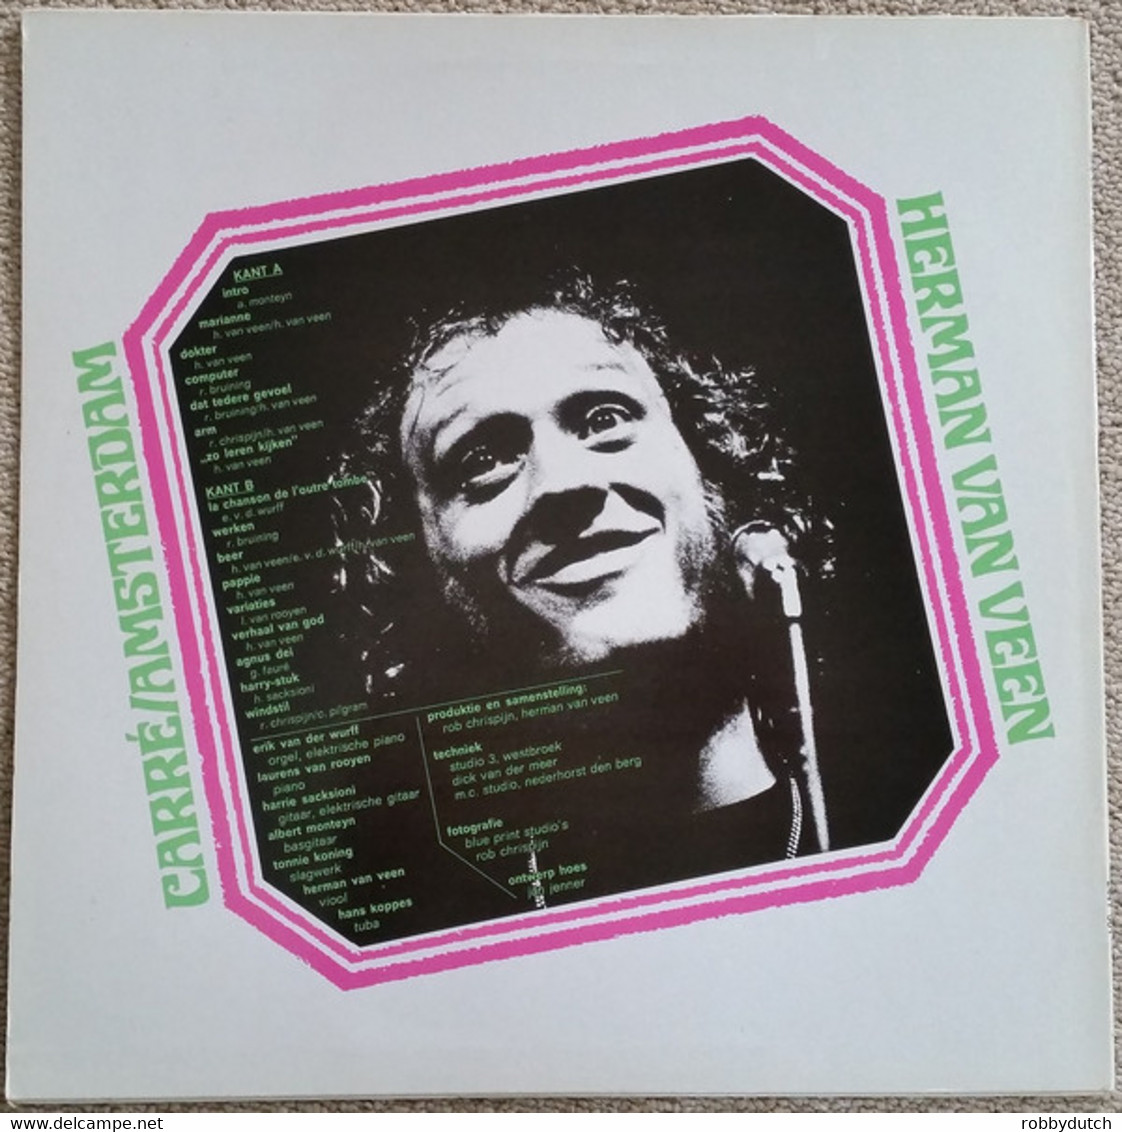 * LP *  HERMAN VAN VEEN - CARRÉ / AMSTERDAM - ZO LEREN KIJKEN (Holland 1973) - Sonstige - Niederländische Musik